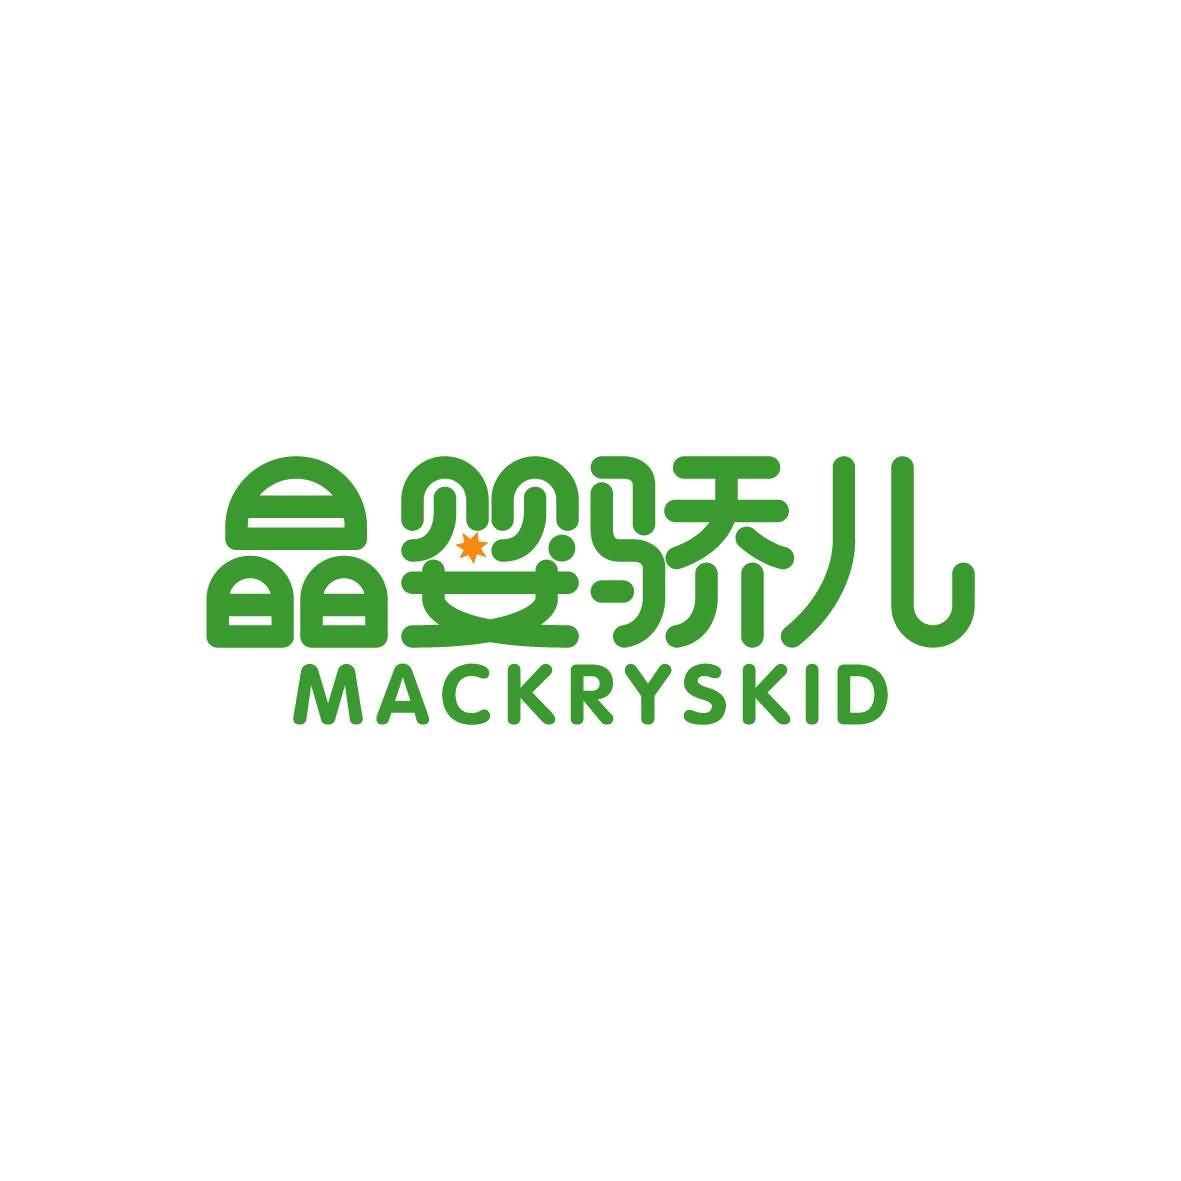 广州市舒哲电子商务商行商标晶婴骄儿 MACKRYSKID（45类）商标转让流程及费用